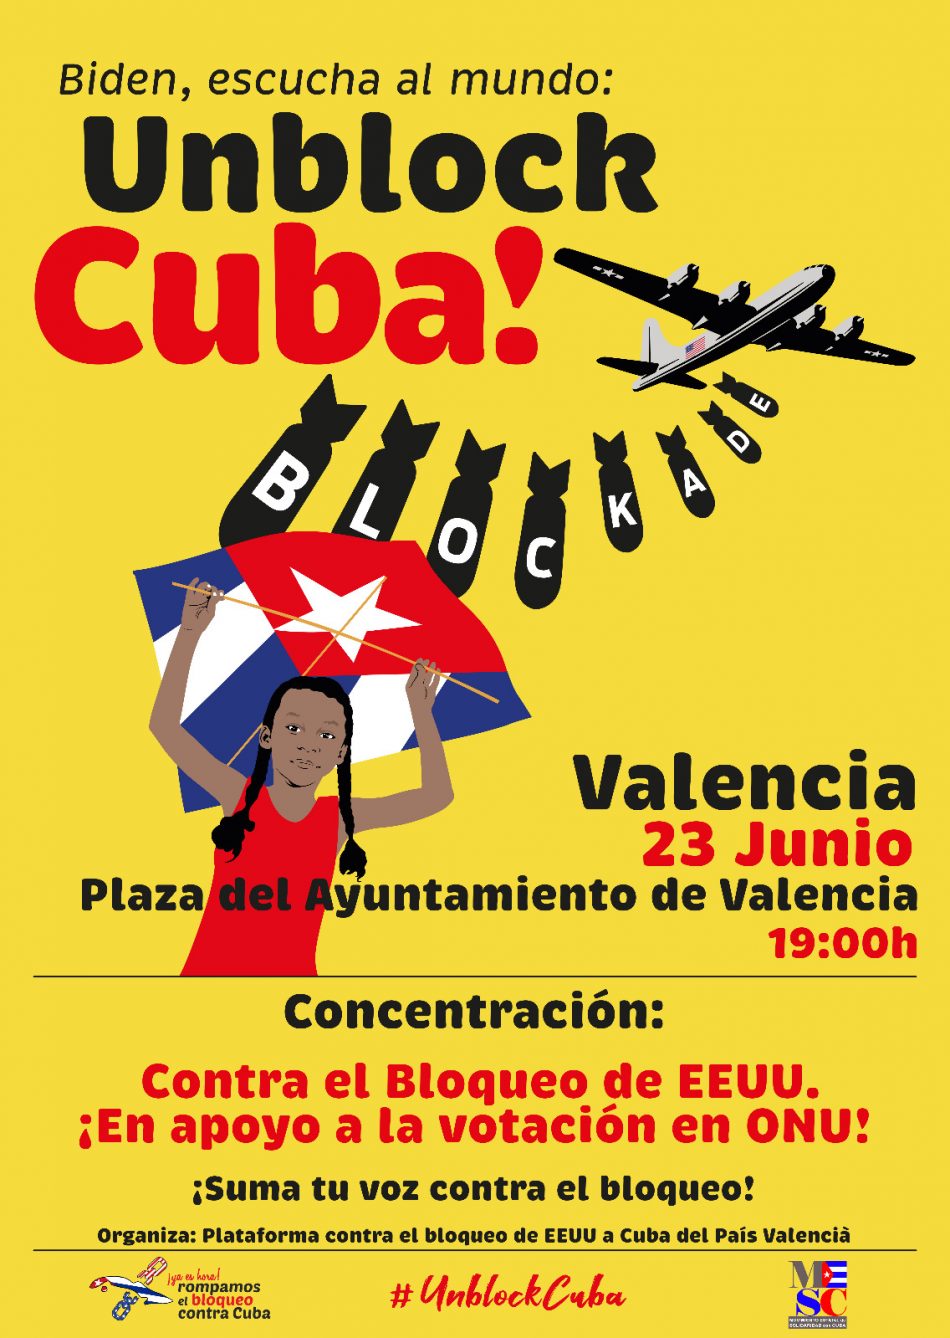 La Plataforma contra el bloqueo de EEUU a Cuba del País Valencià presenta las acciones en apoyo a la votación en la ONU